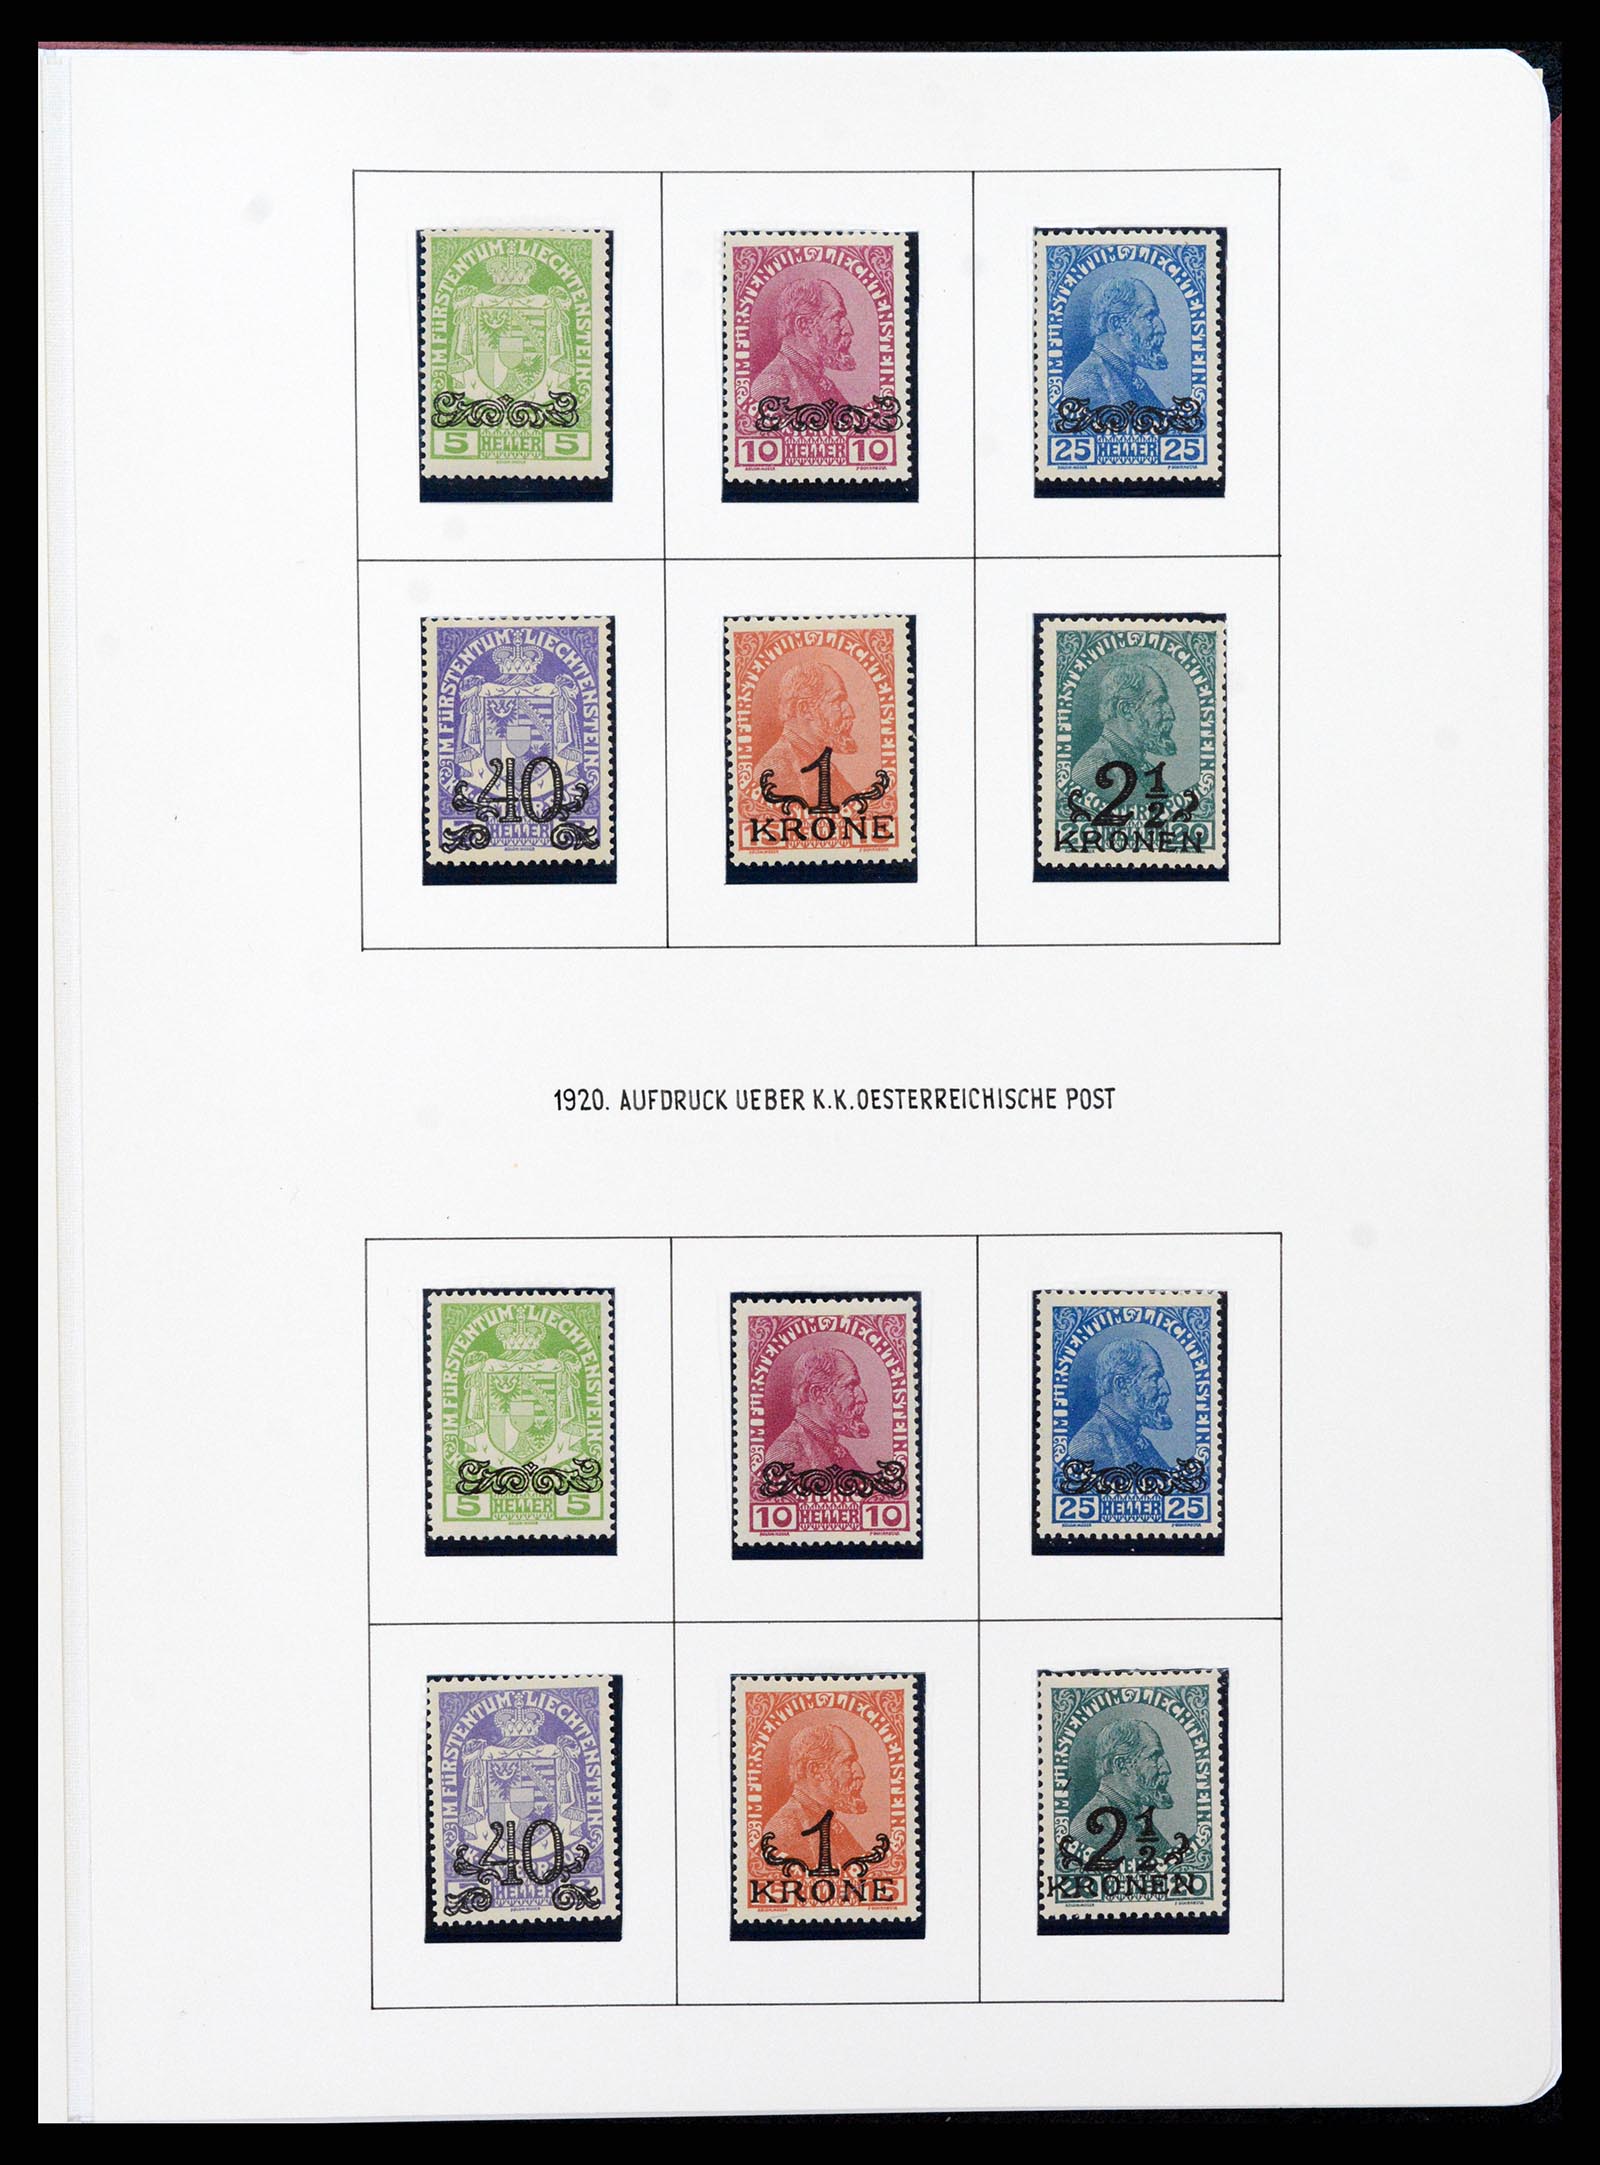 37150 0042 - Stamp collection 37150 Liechtenstein supercollection 1912-1962.